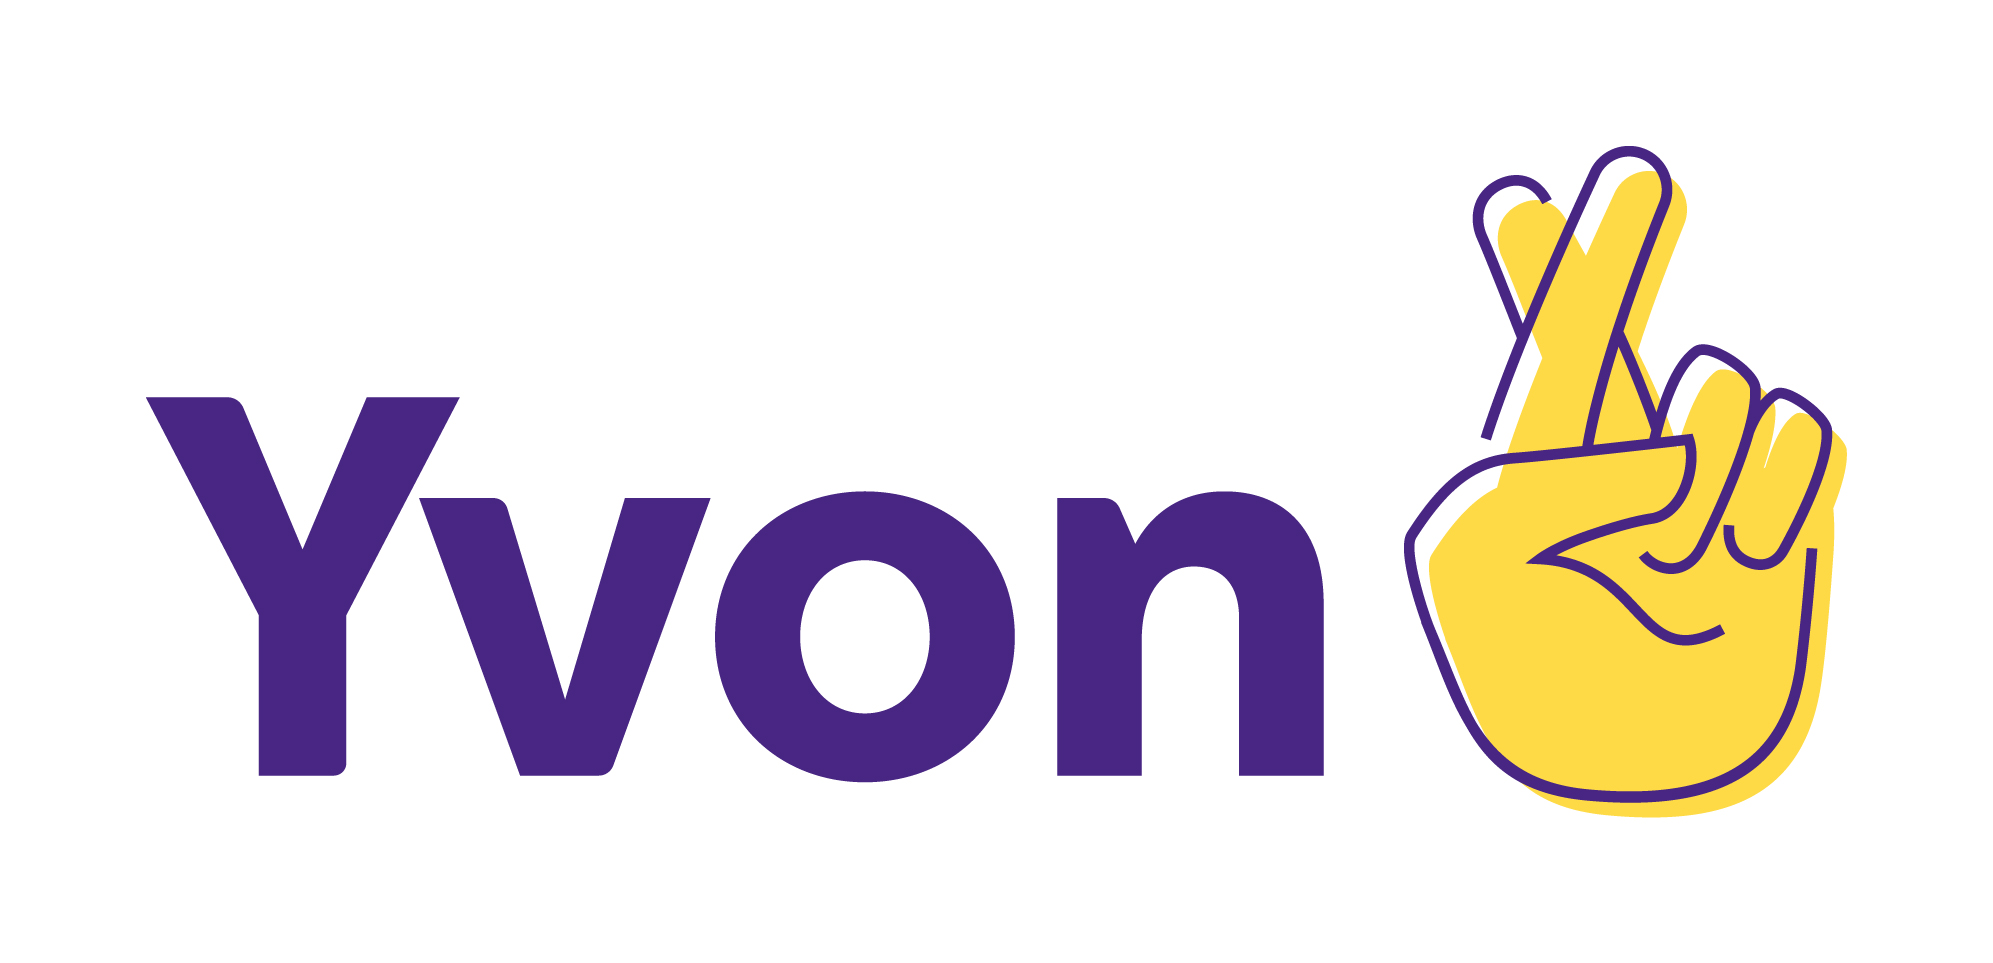 vyv_yvon_logo_rvb